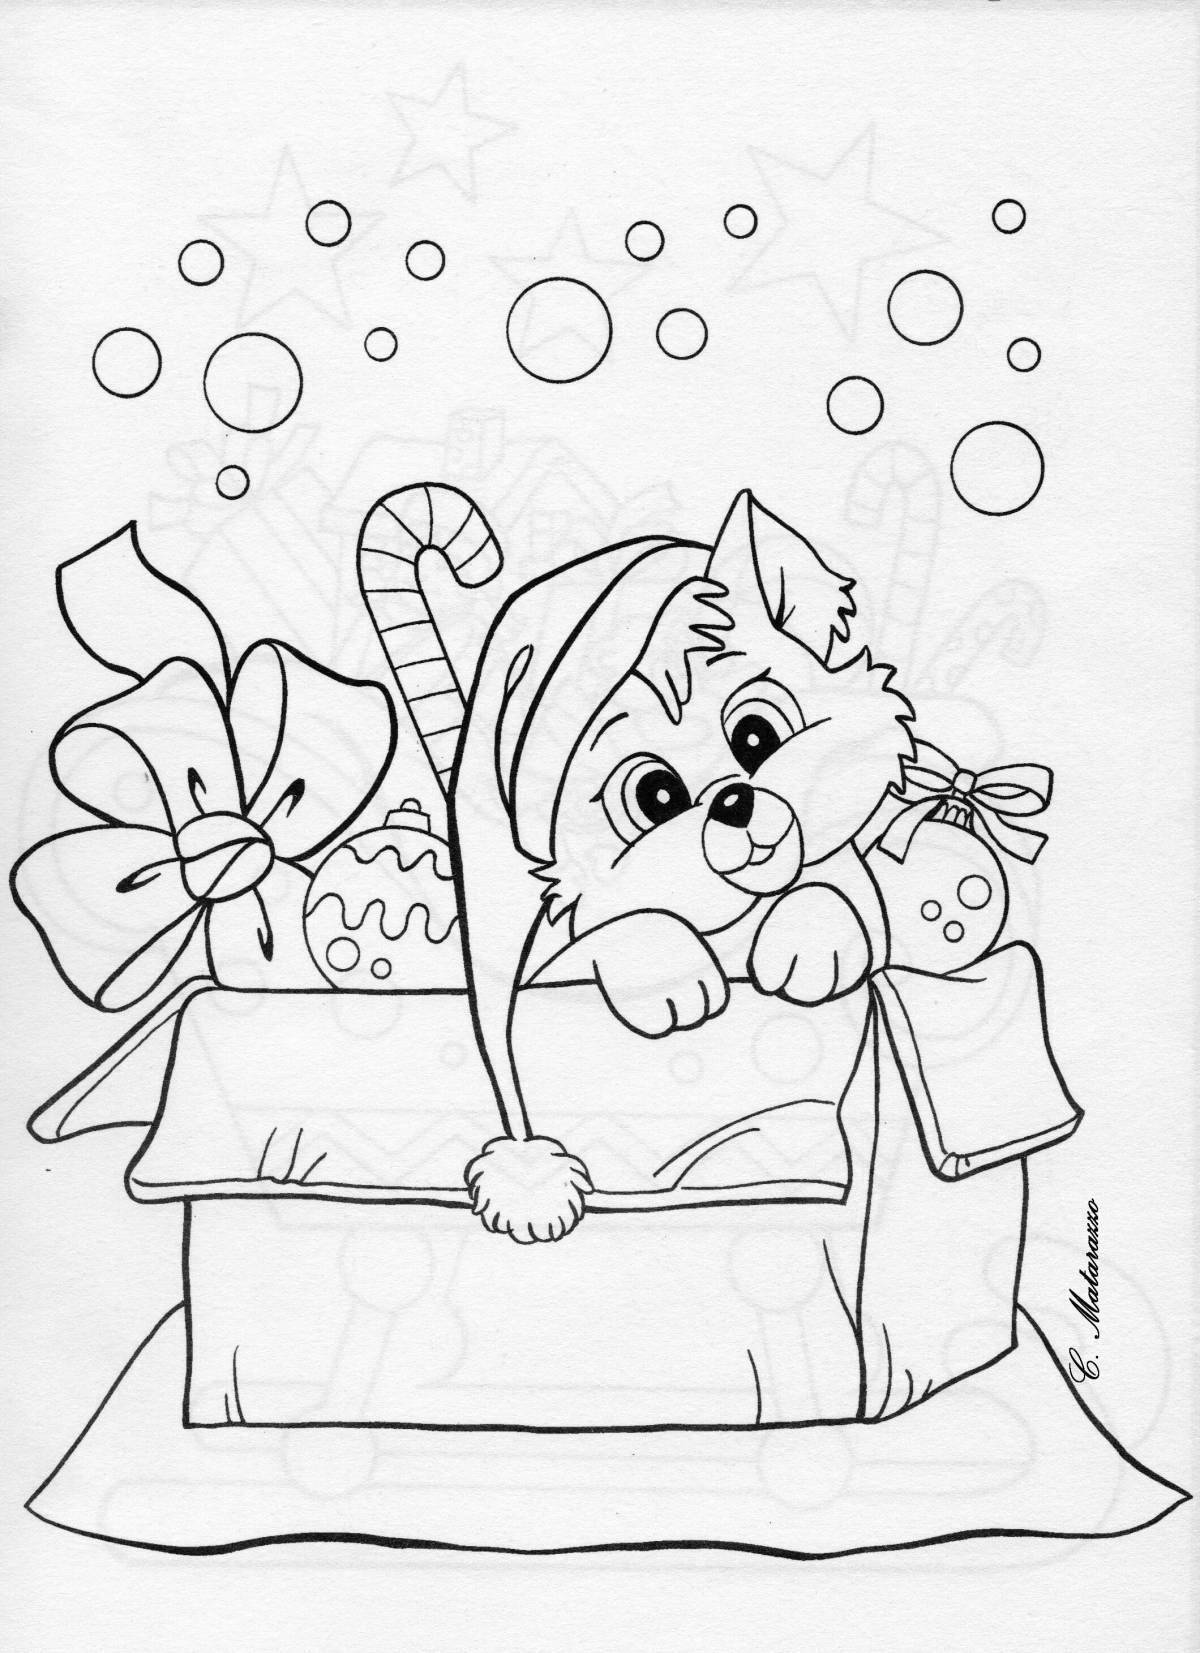 Rampant cat new year coloring book